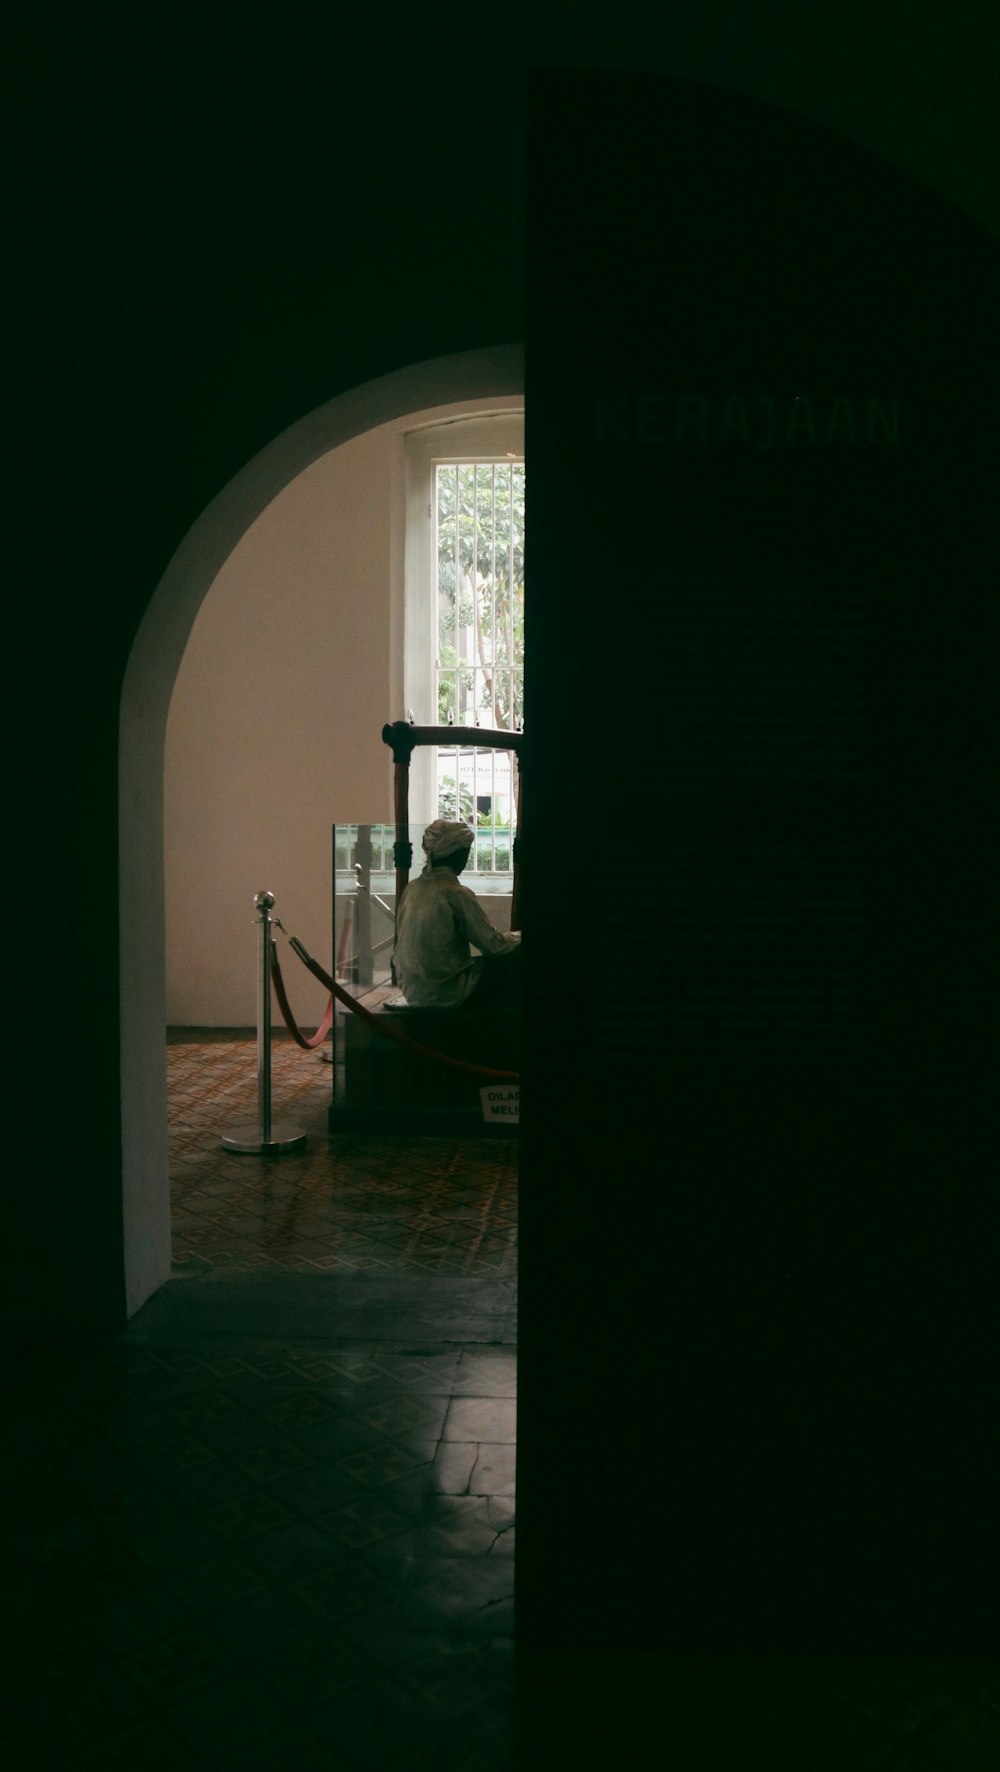 Un hombre sentado en un banco en una habitación oscura